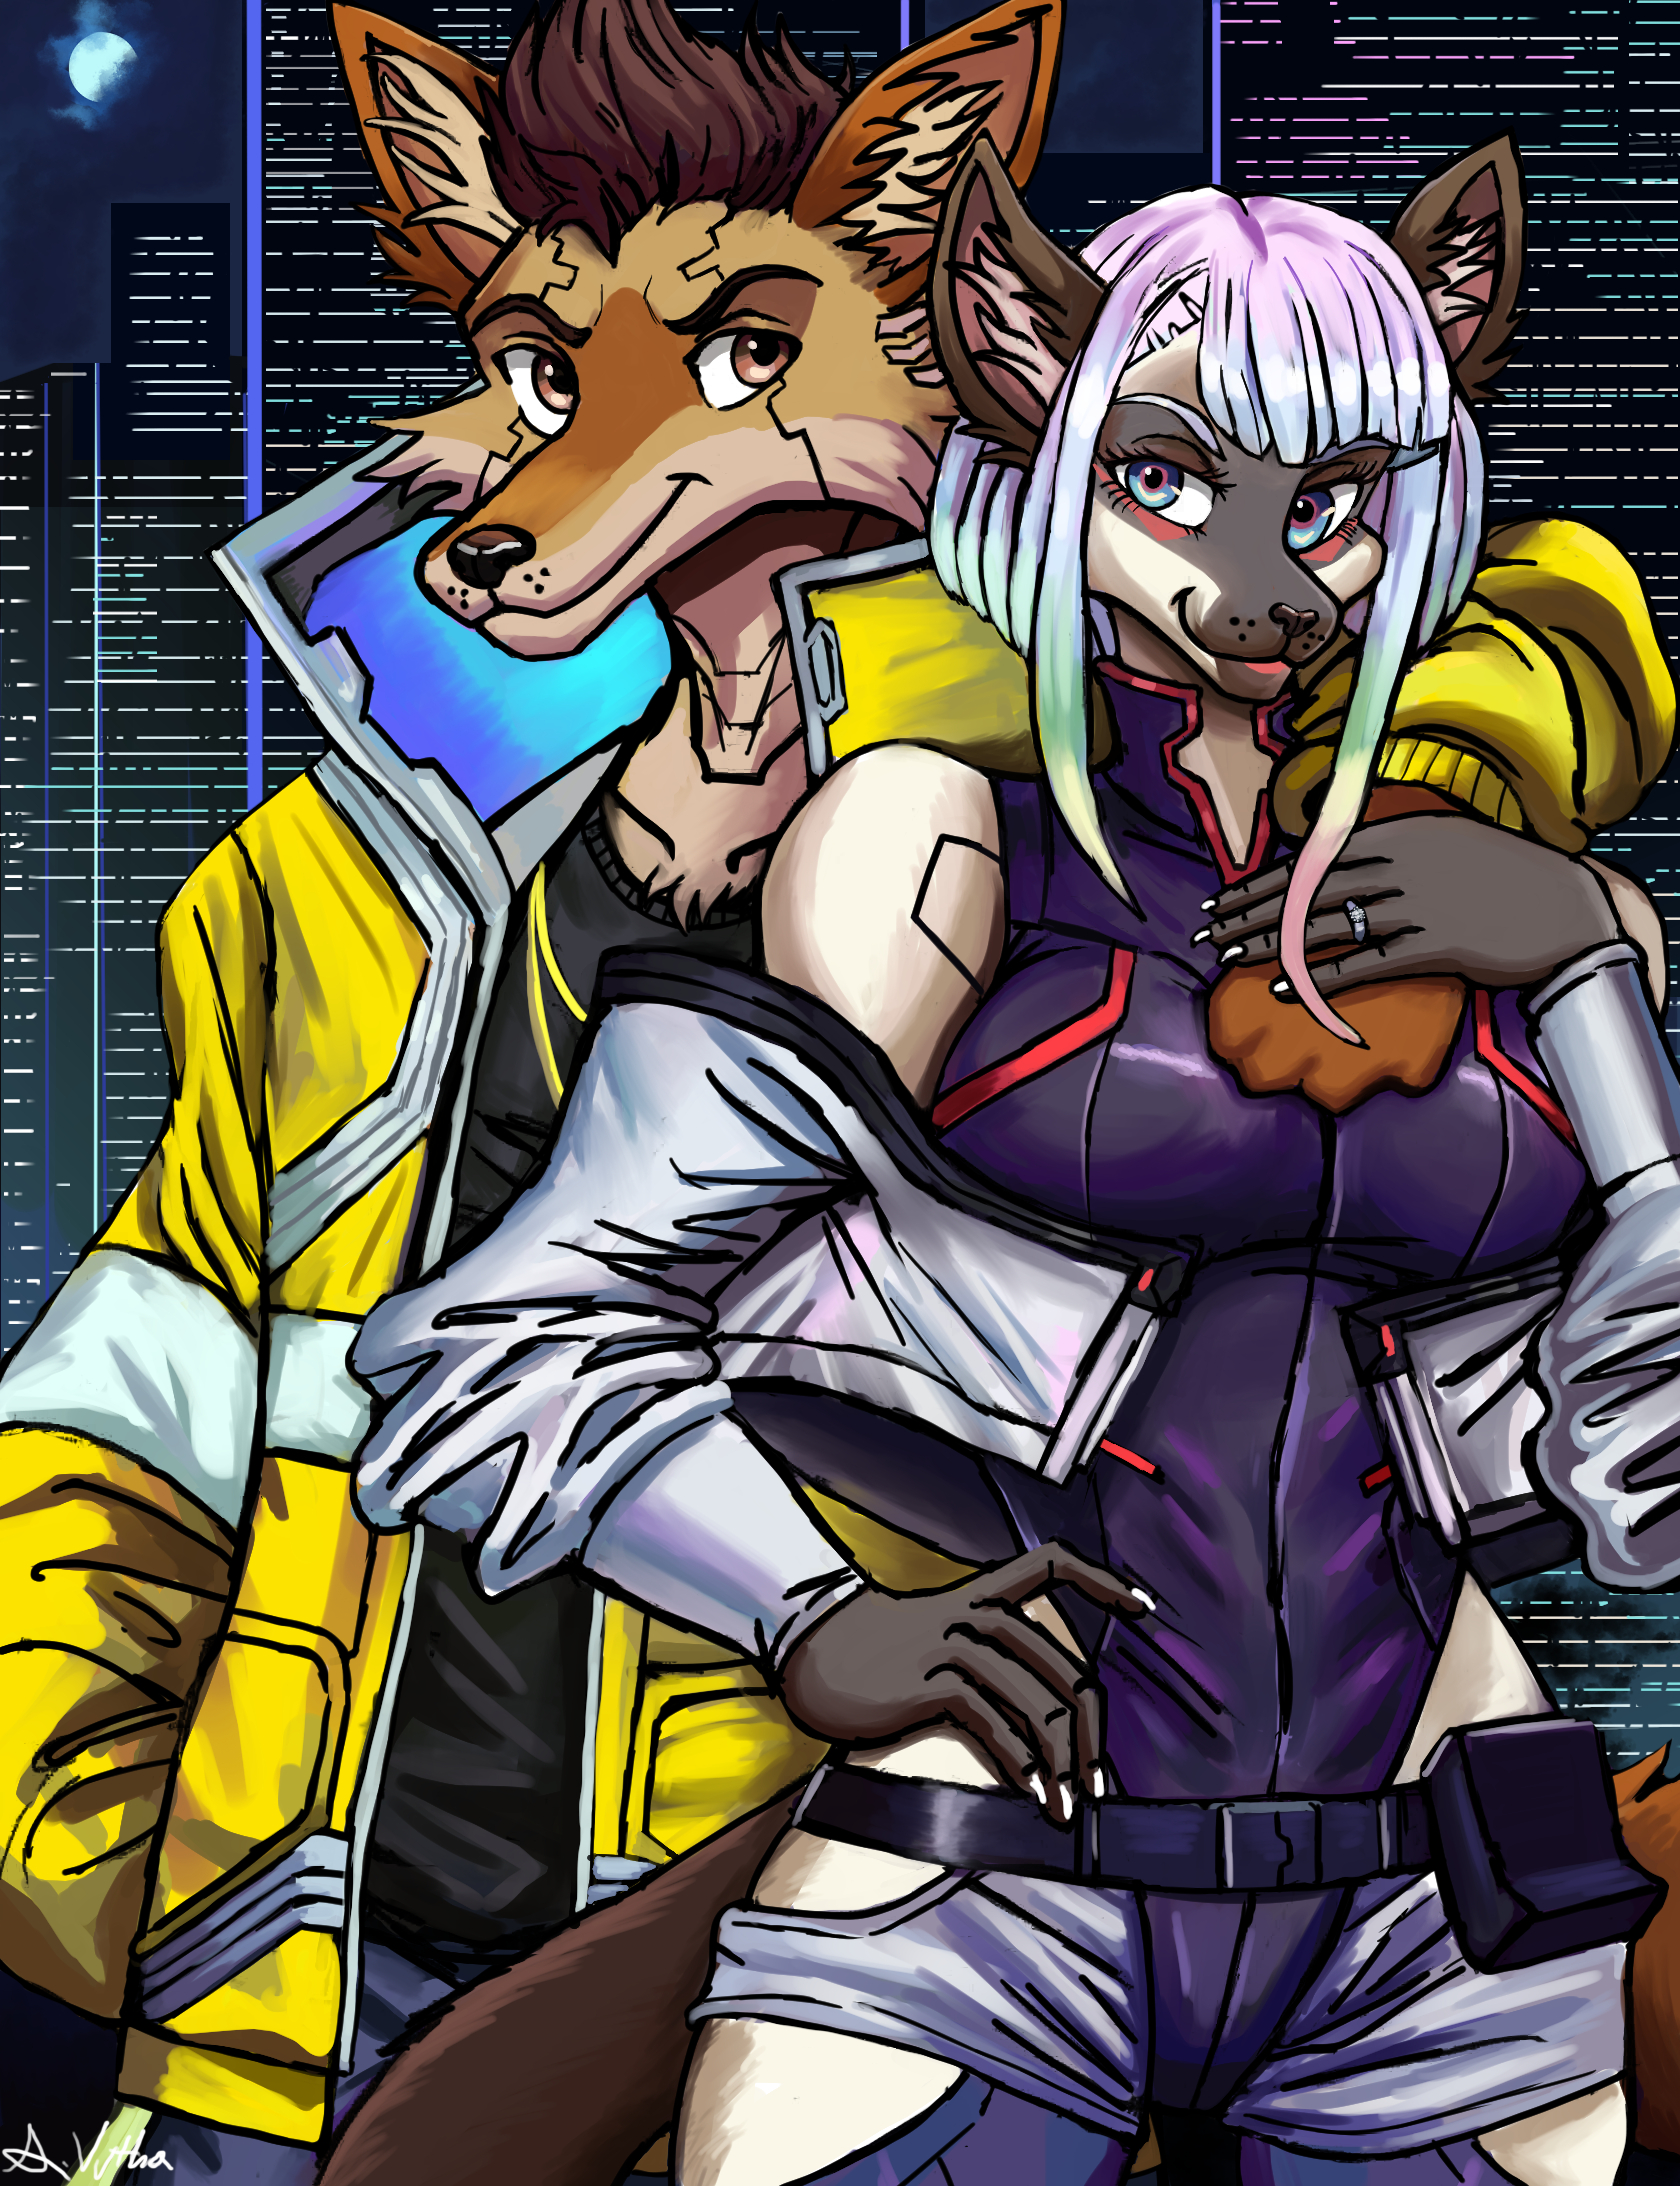 Cyberpunk Edgerunners - David  Cyberpunk anime, Cyberpunk, Cyberpunk art